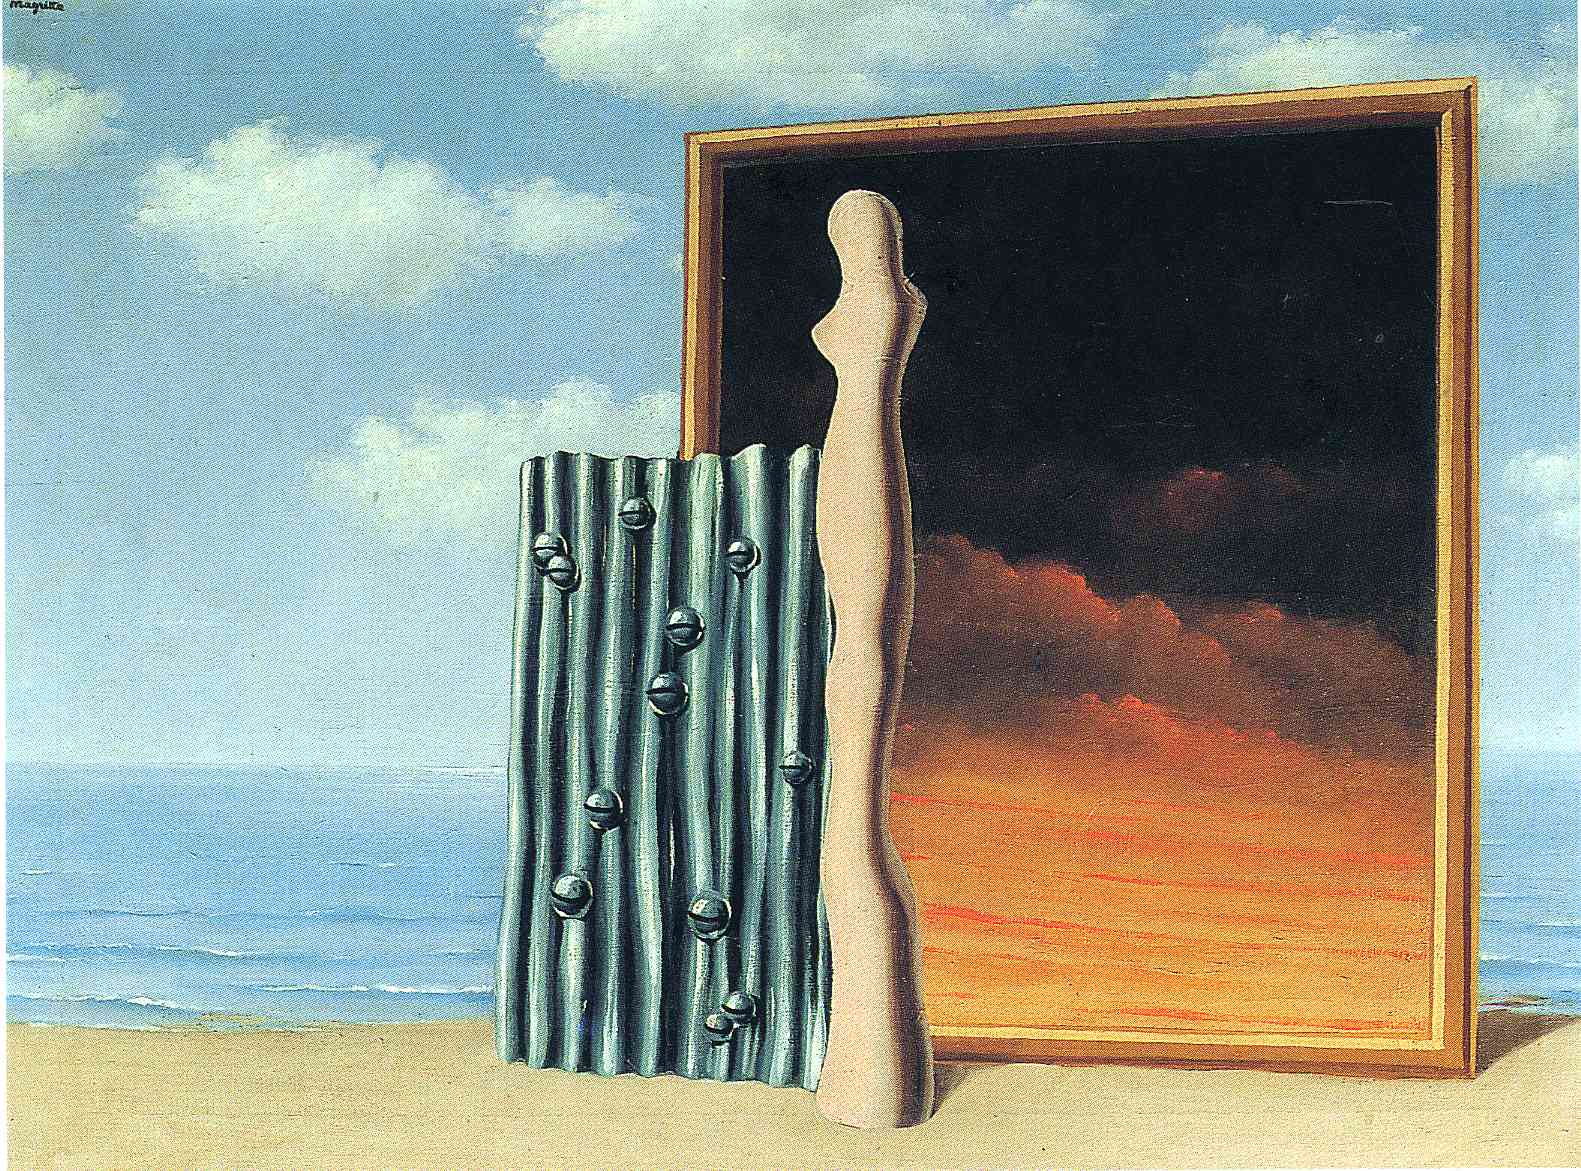 Composition on a seashore (1935).